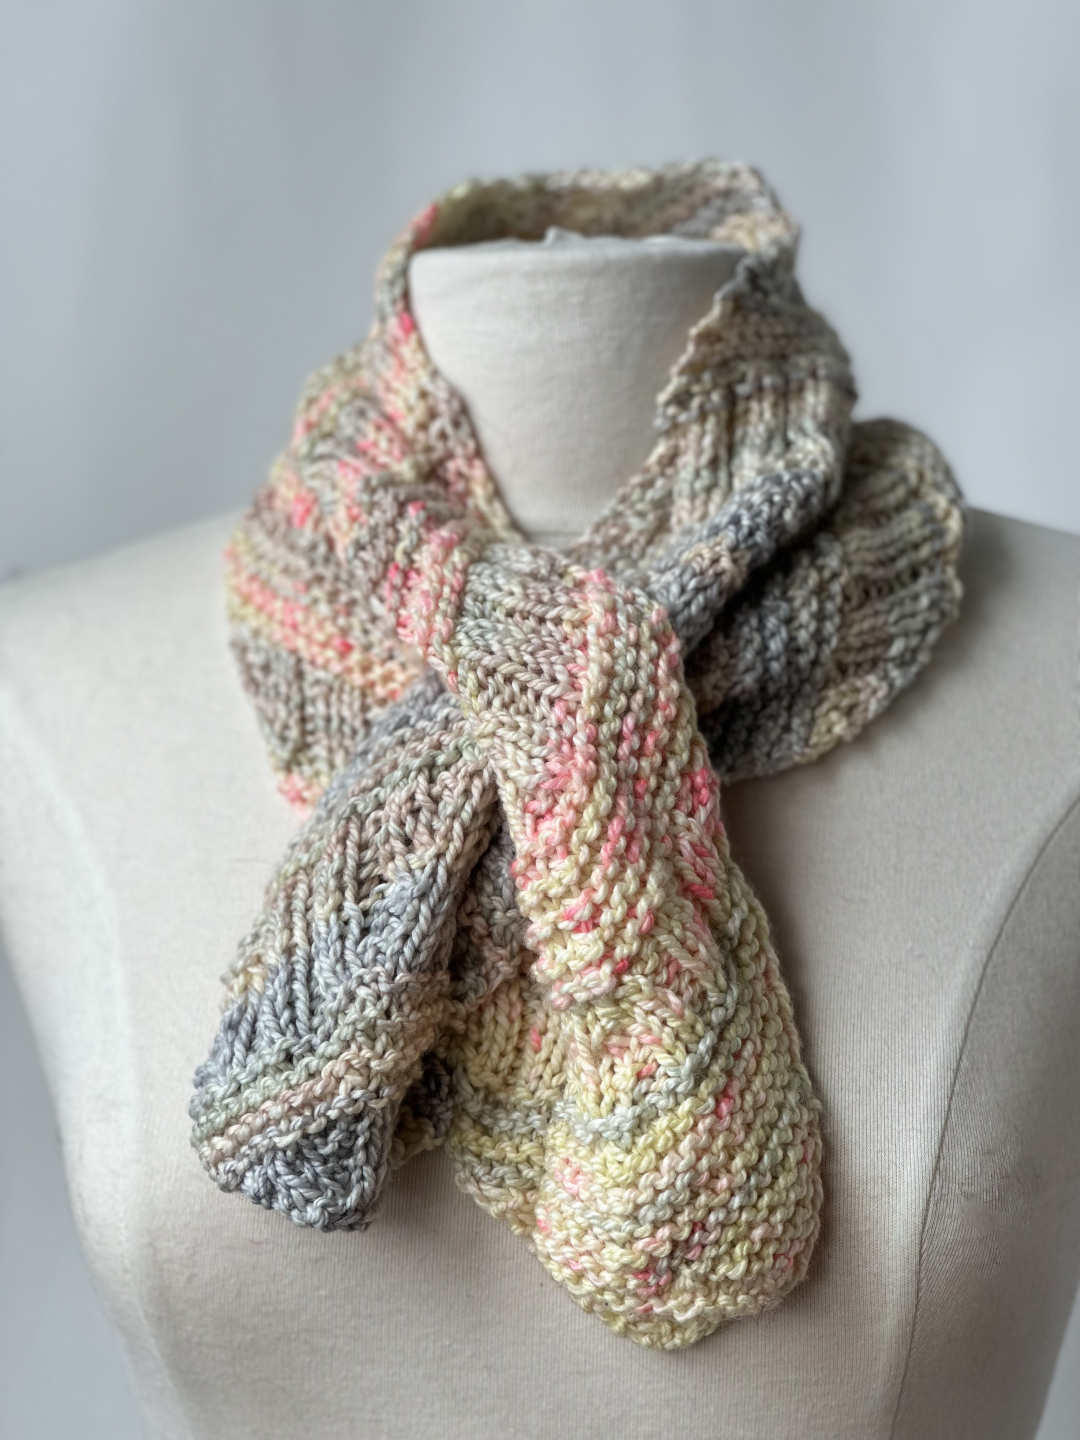 Soft Swirl Neckwarmer knit in Silky Twist